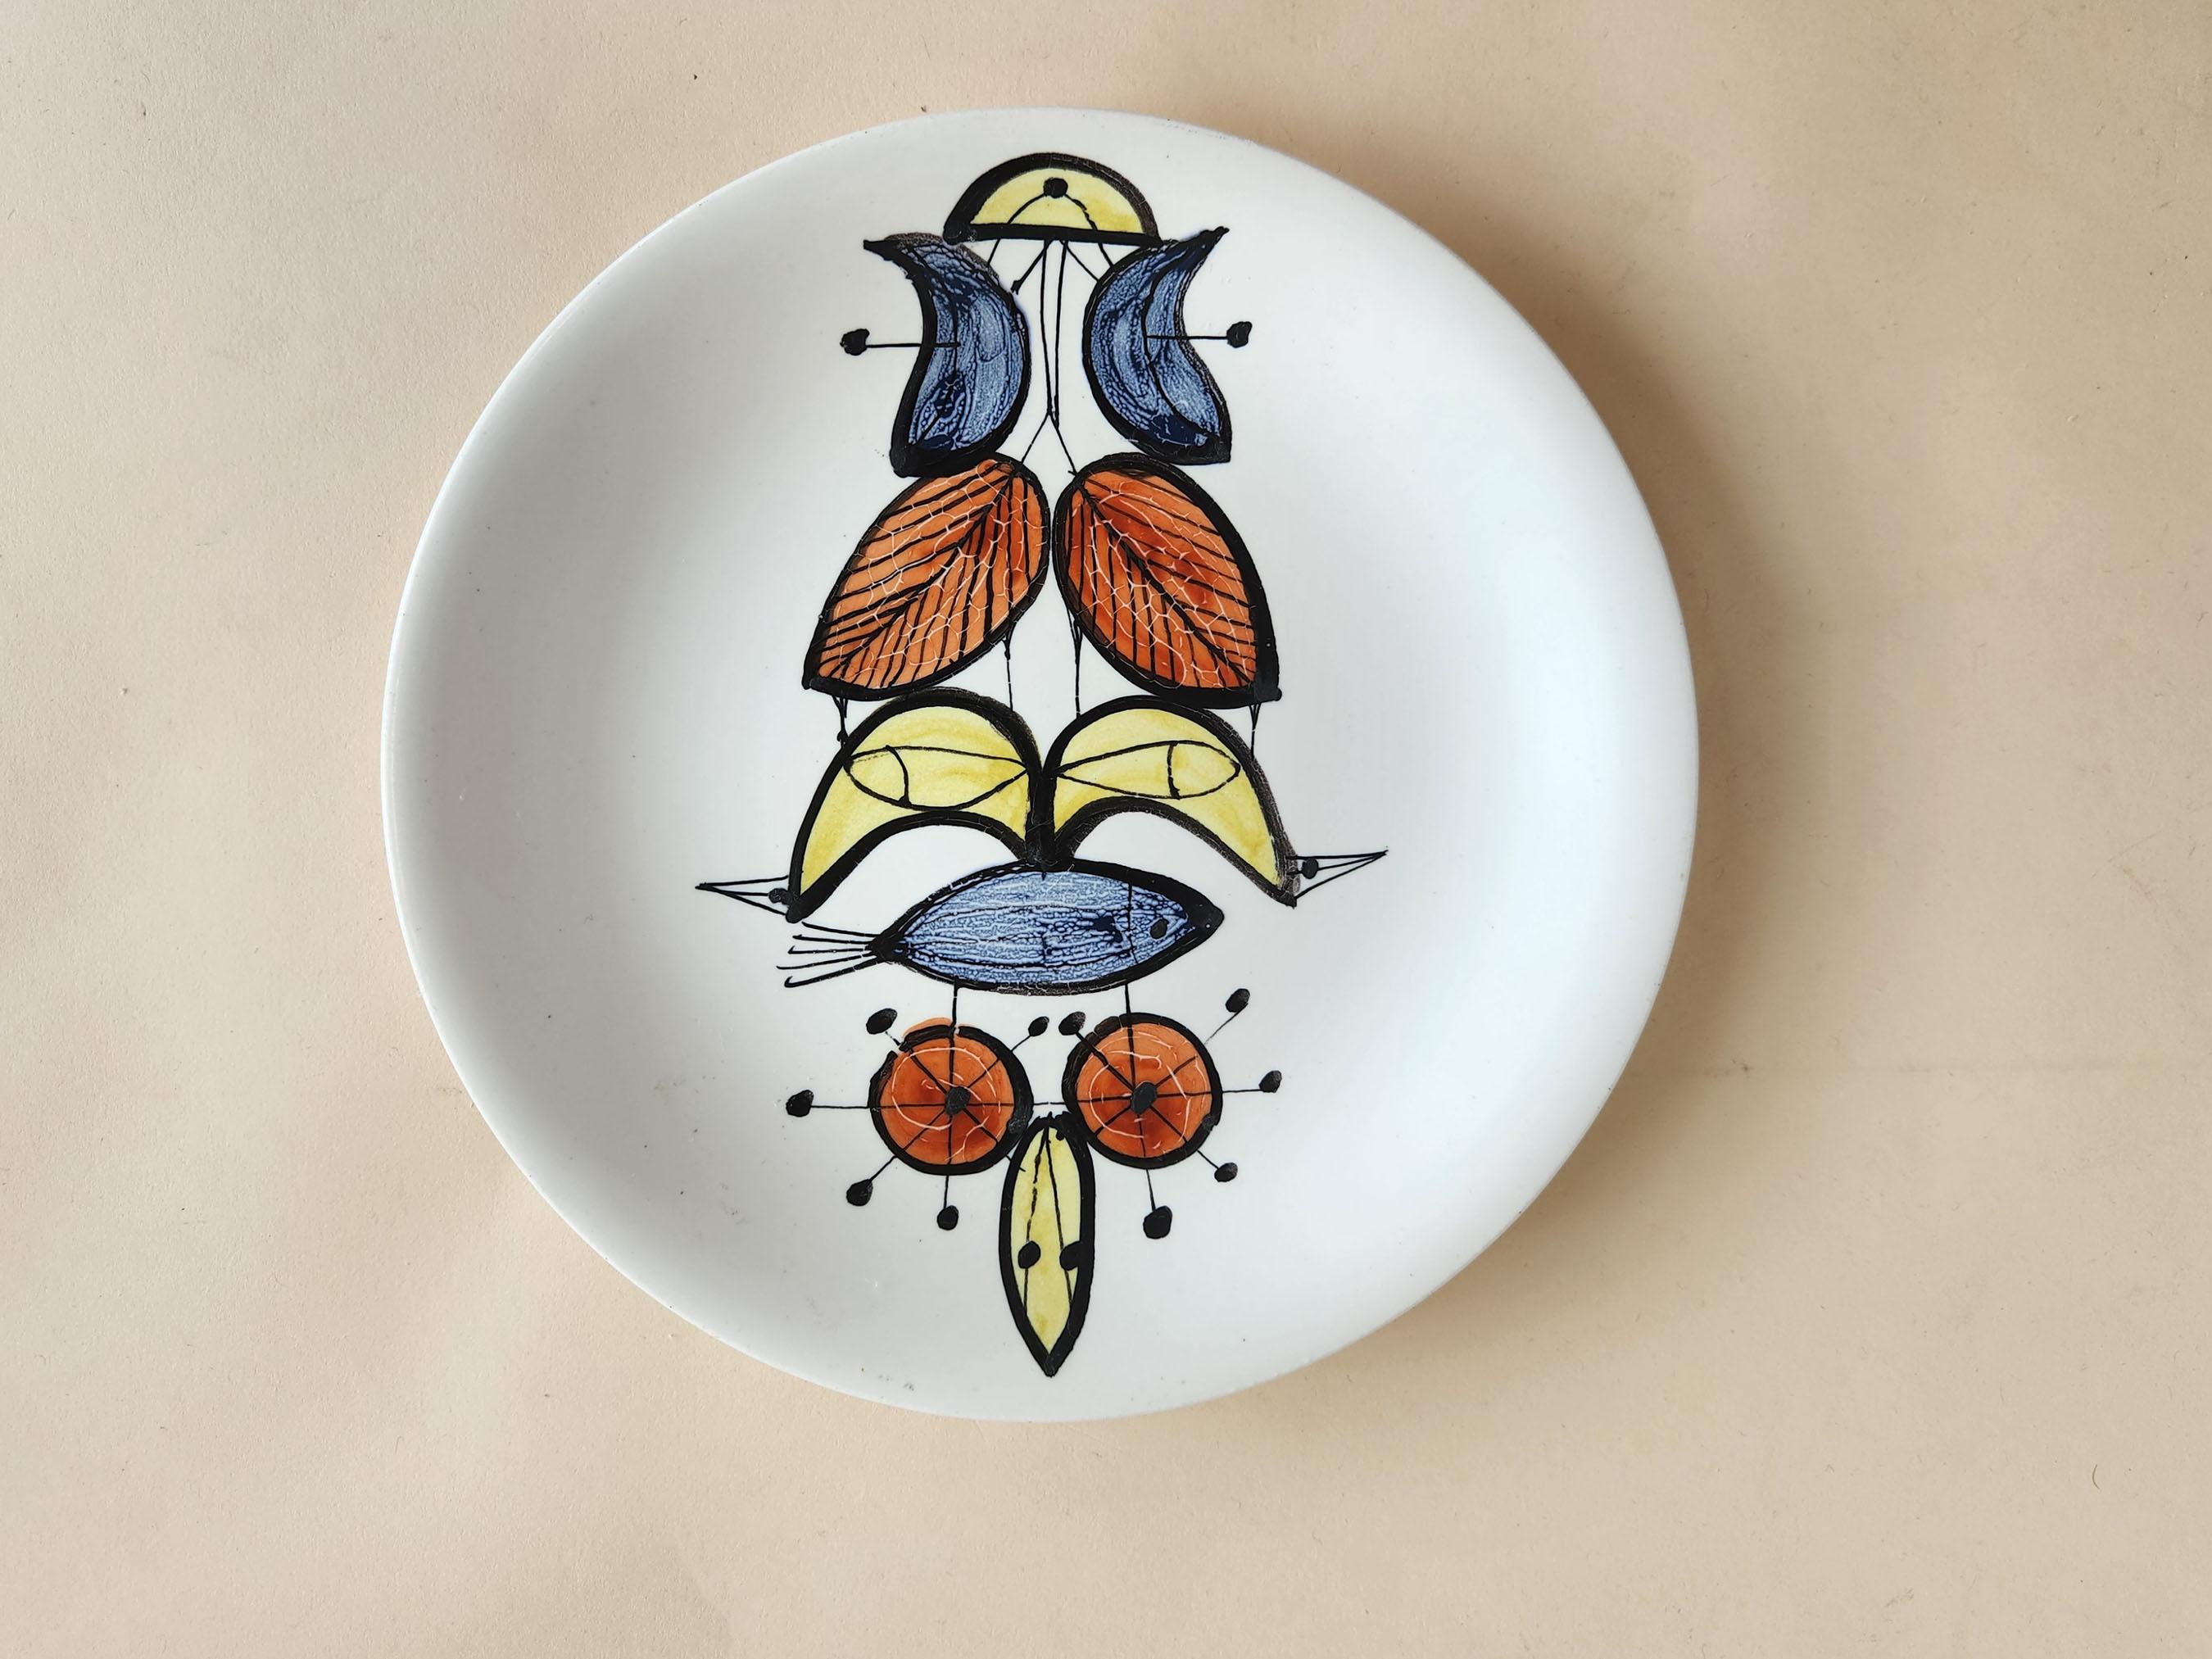 Vintage Keramikteller mit abstraktem Motiv von Roger Capron - Vallauris, Frankreich

Roger Capron war ein einflussreicher französischer Keramiker, der für seine Kacheltische und die Verwendung wiederkehrender Motive wie stilisierte Zweige und